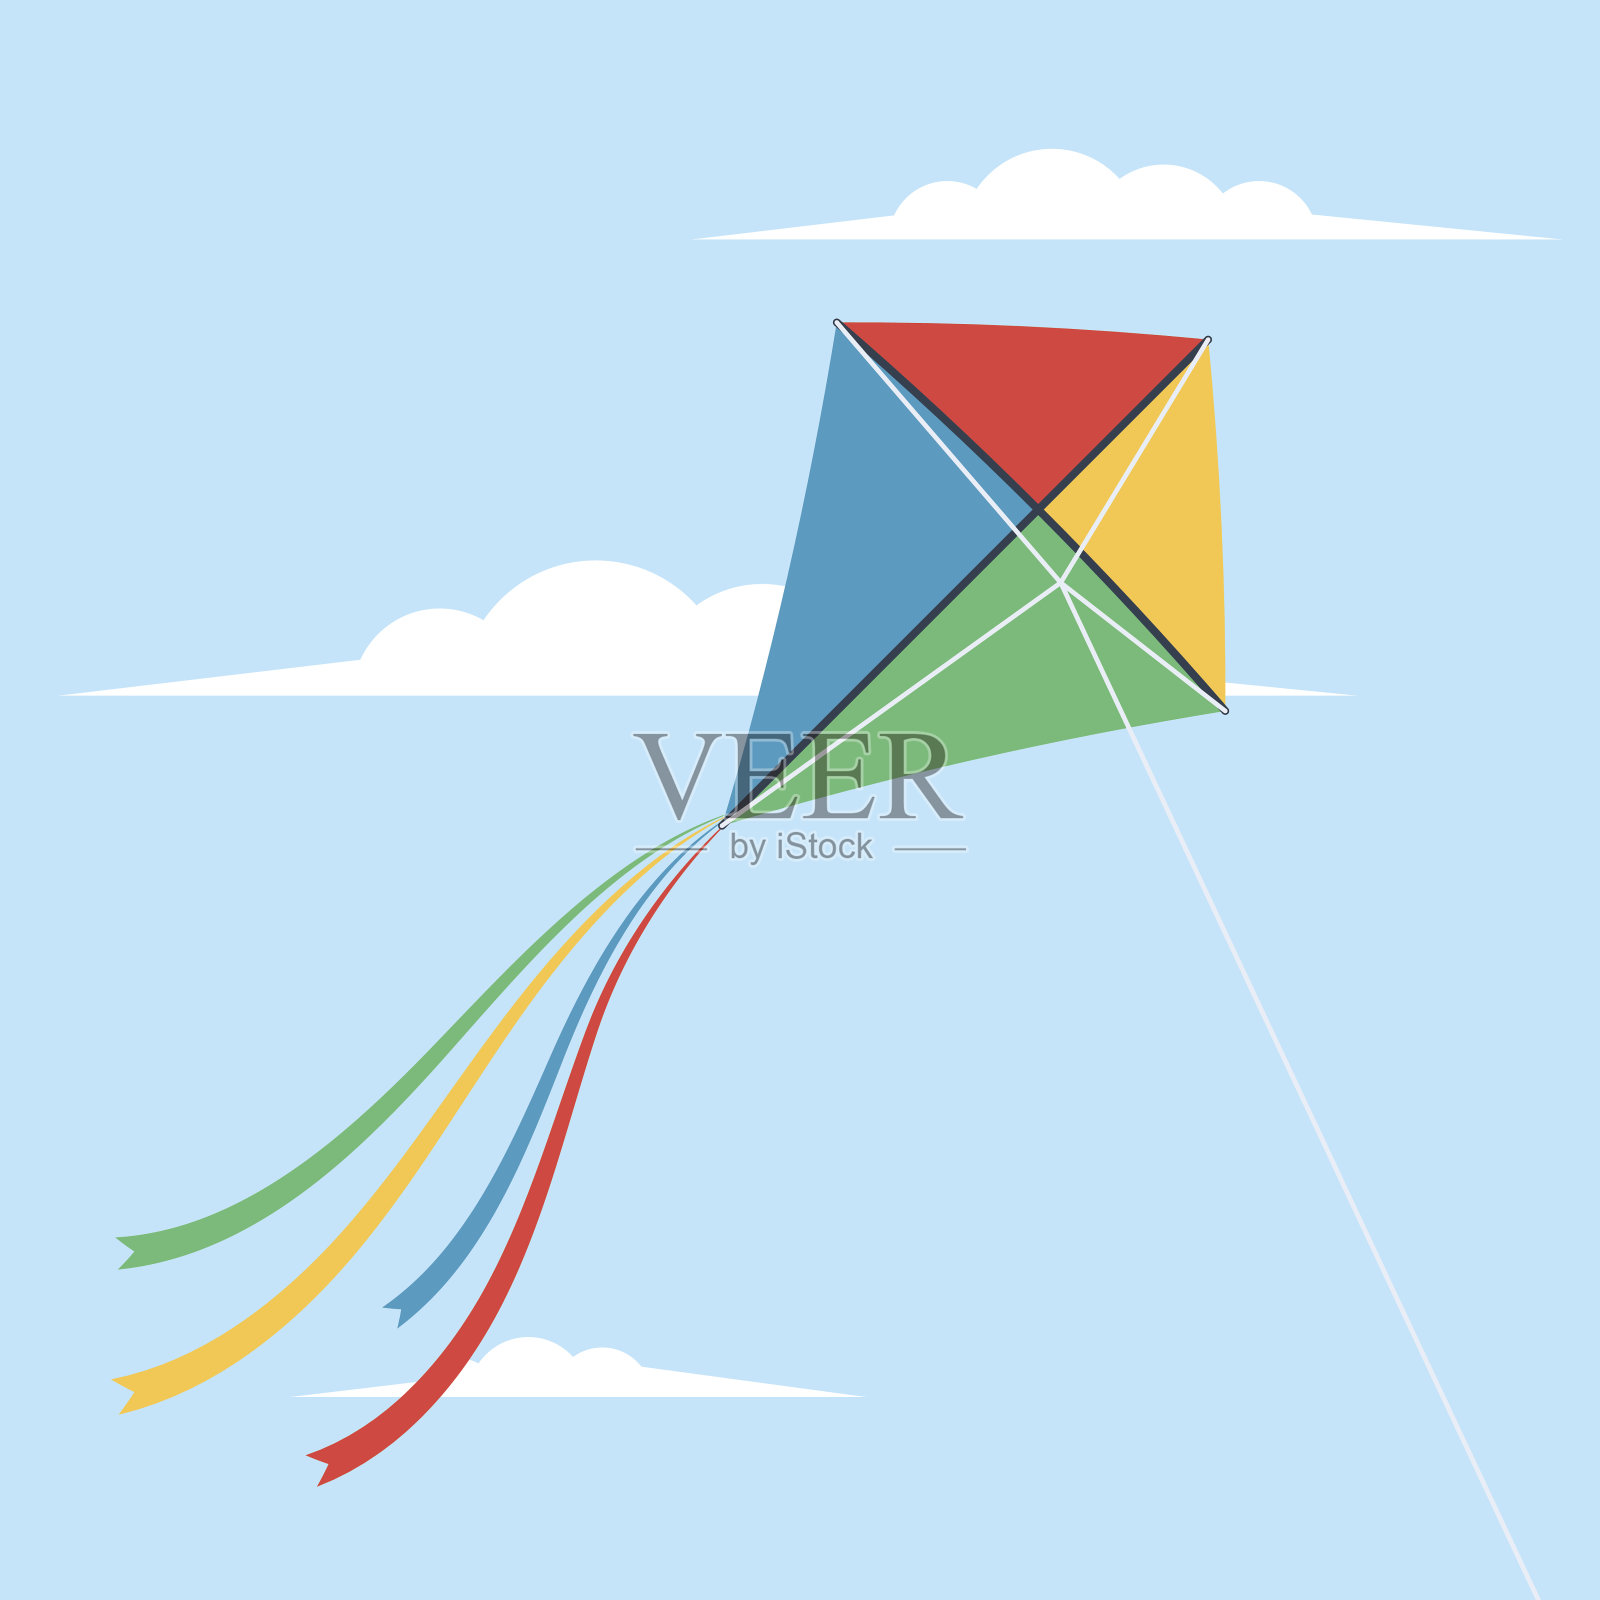 风筝在天空中飞翔插画图片素材